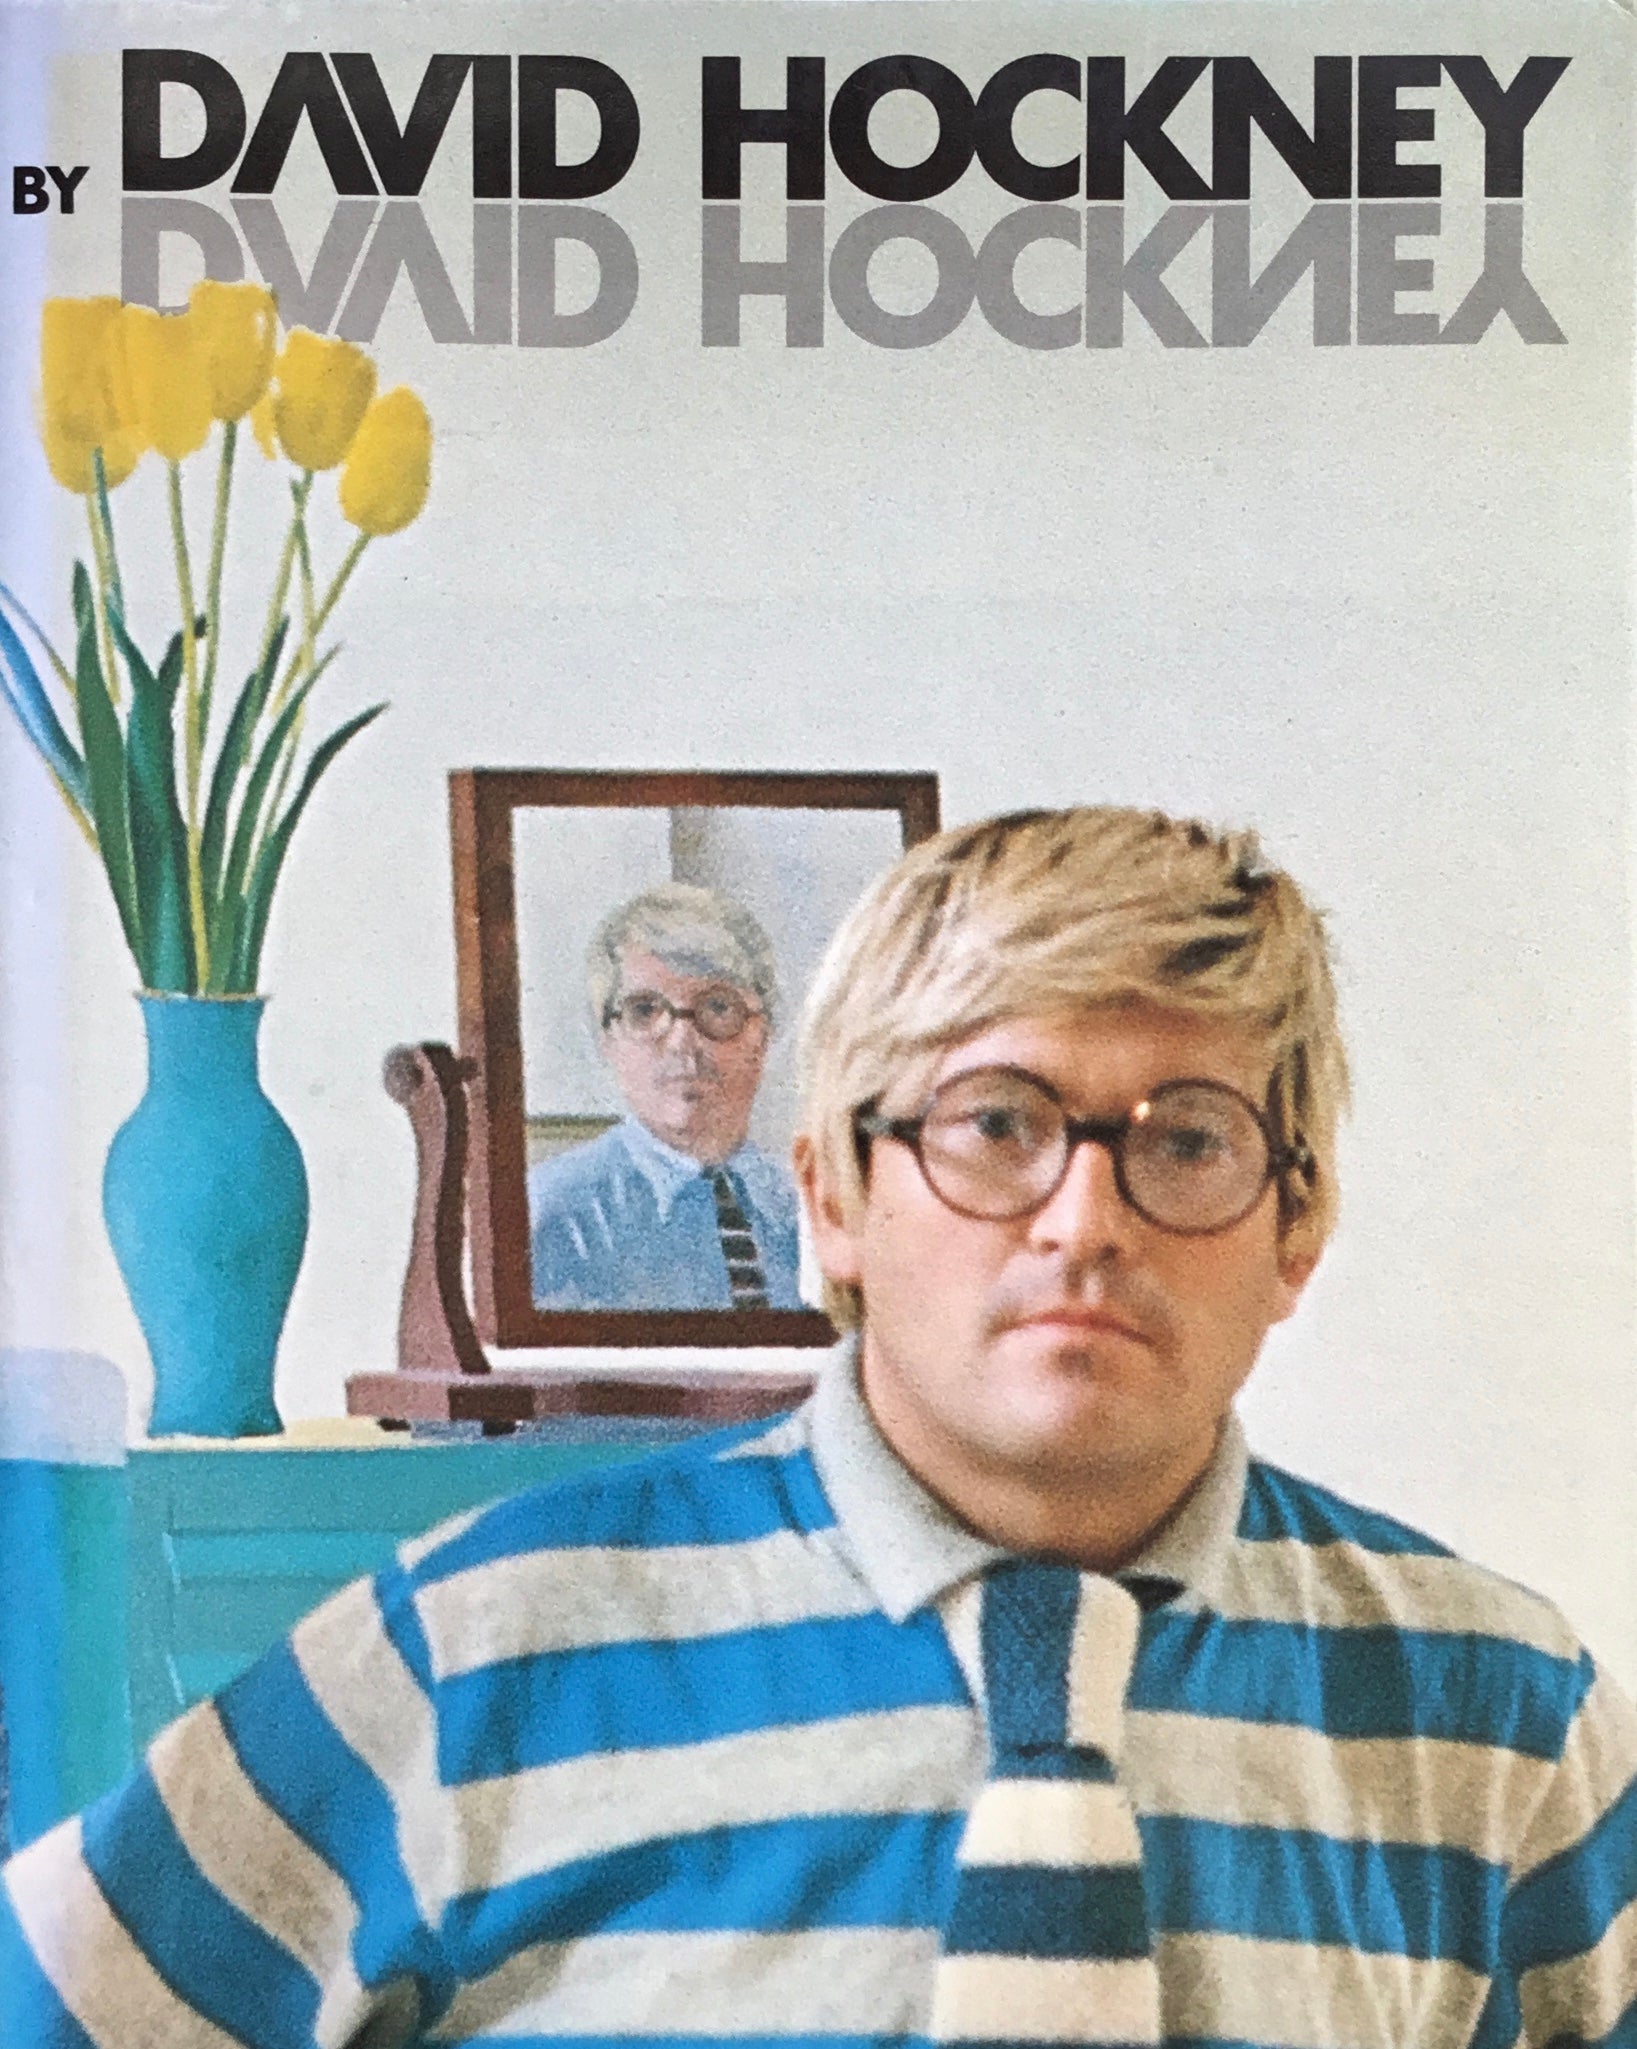 DAVID HOCKNEY by David Hockney　デイヴィッド・ホックニー作品集